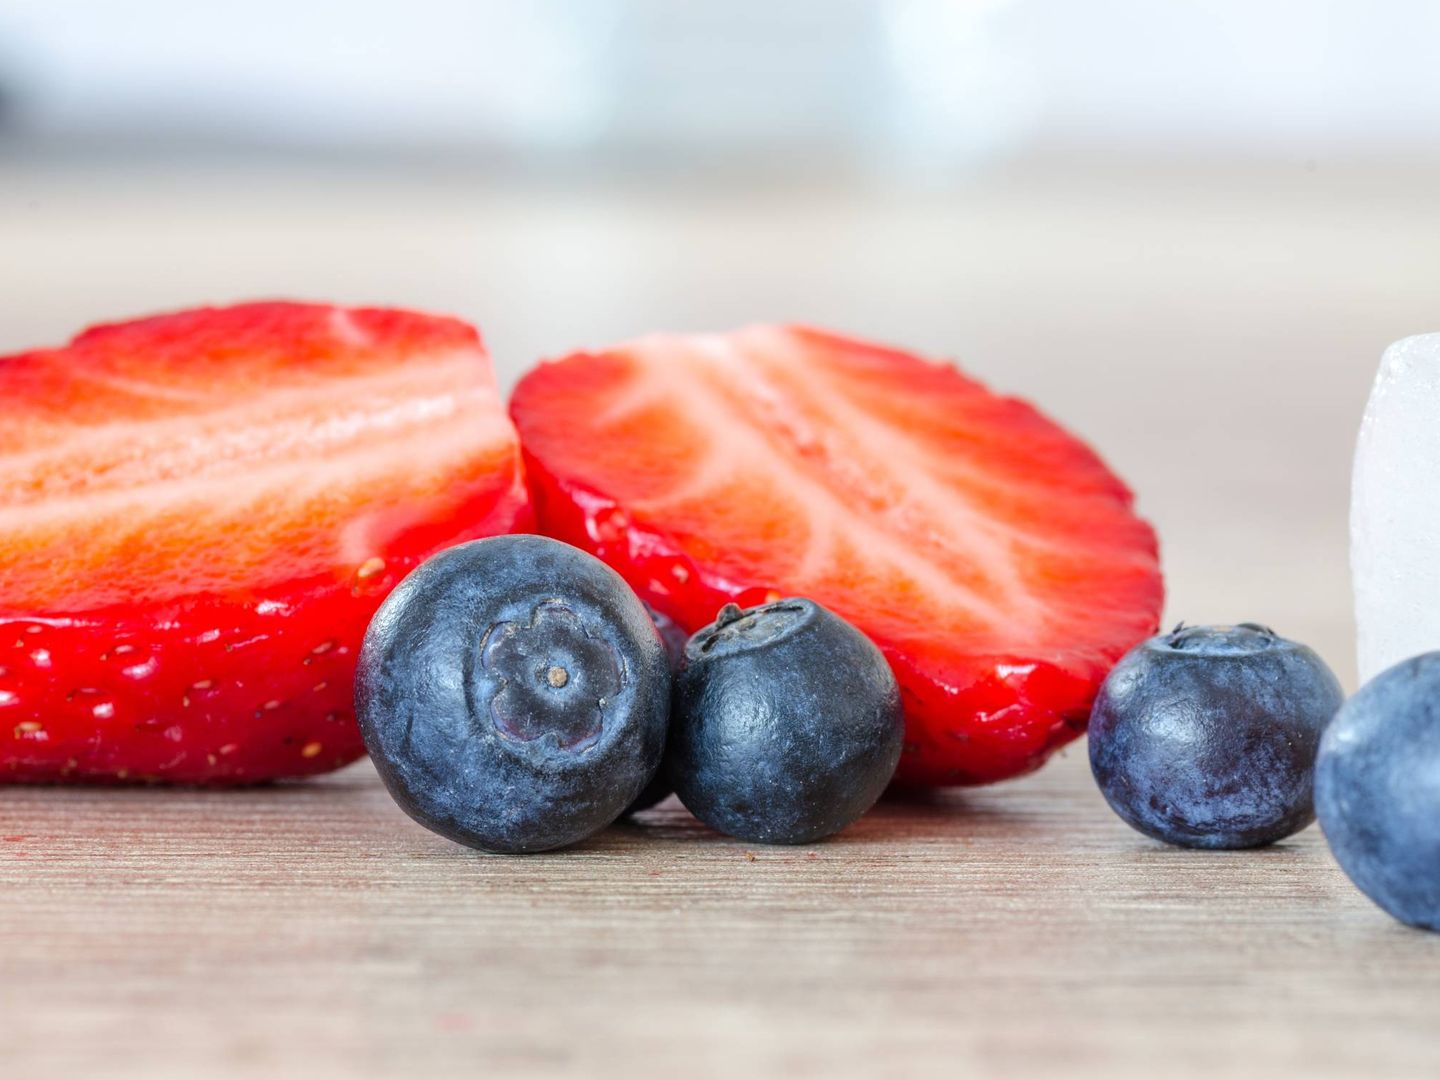 La fruta puede ayudar a aliviar los síntomas.